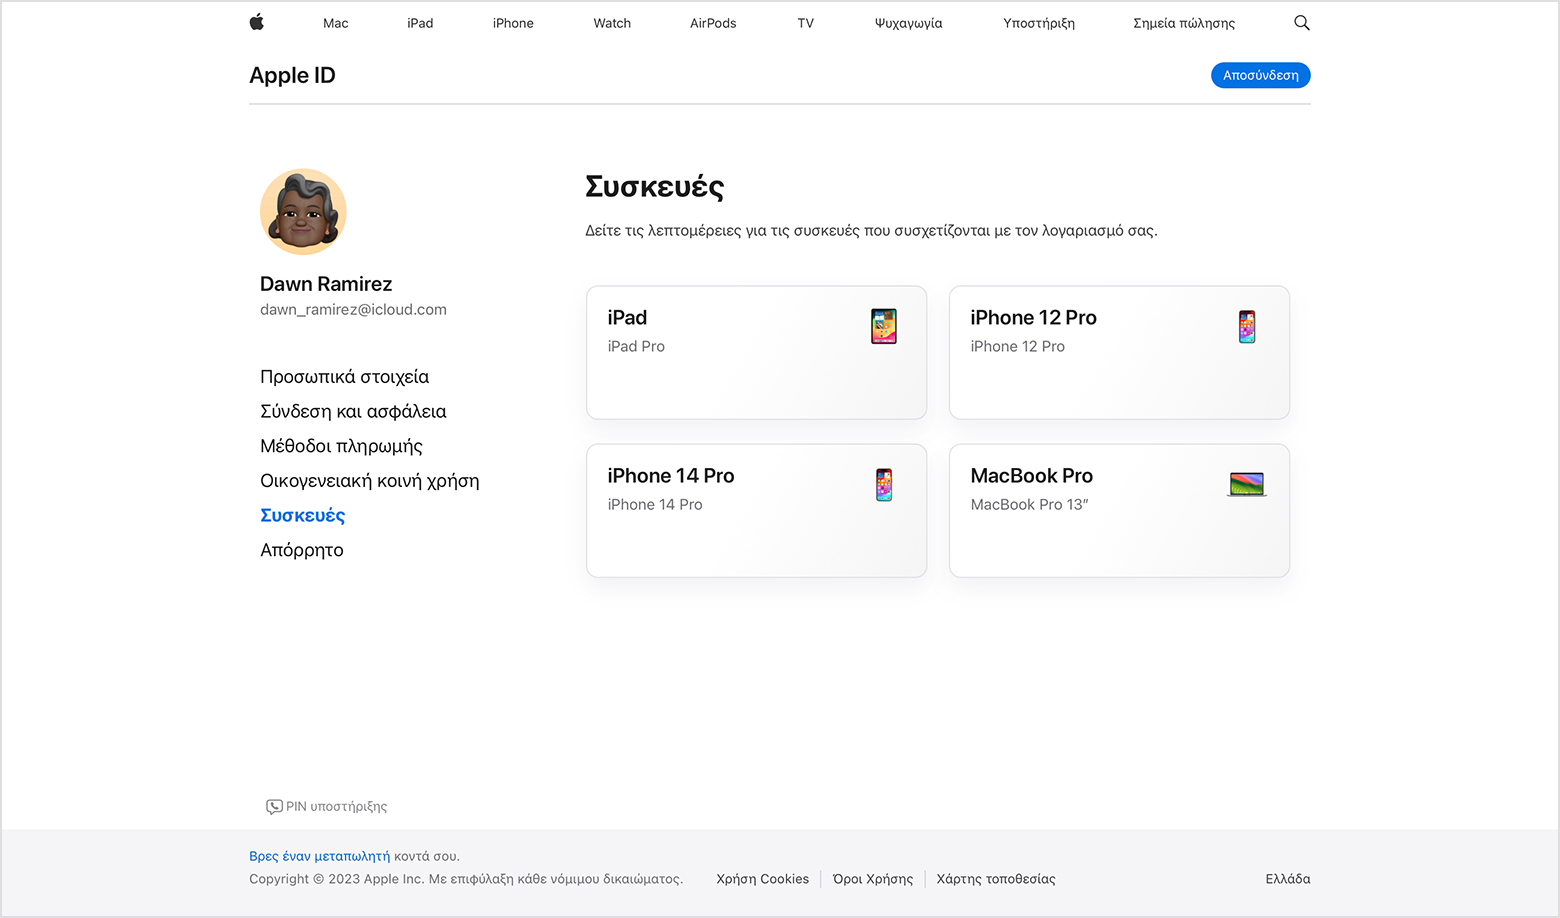 Η σελίδα του λογαριασμού Apple ID στο διαδίκτυο που δείχνει τις συσκευές που είναι συνδεδεμένες με το Apple ID